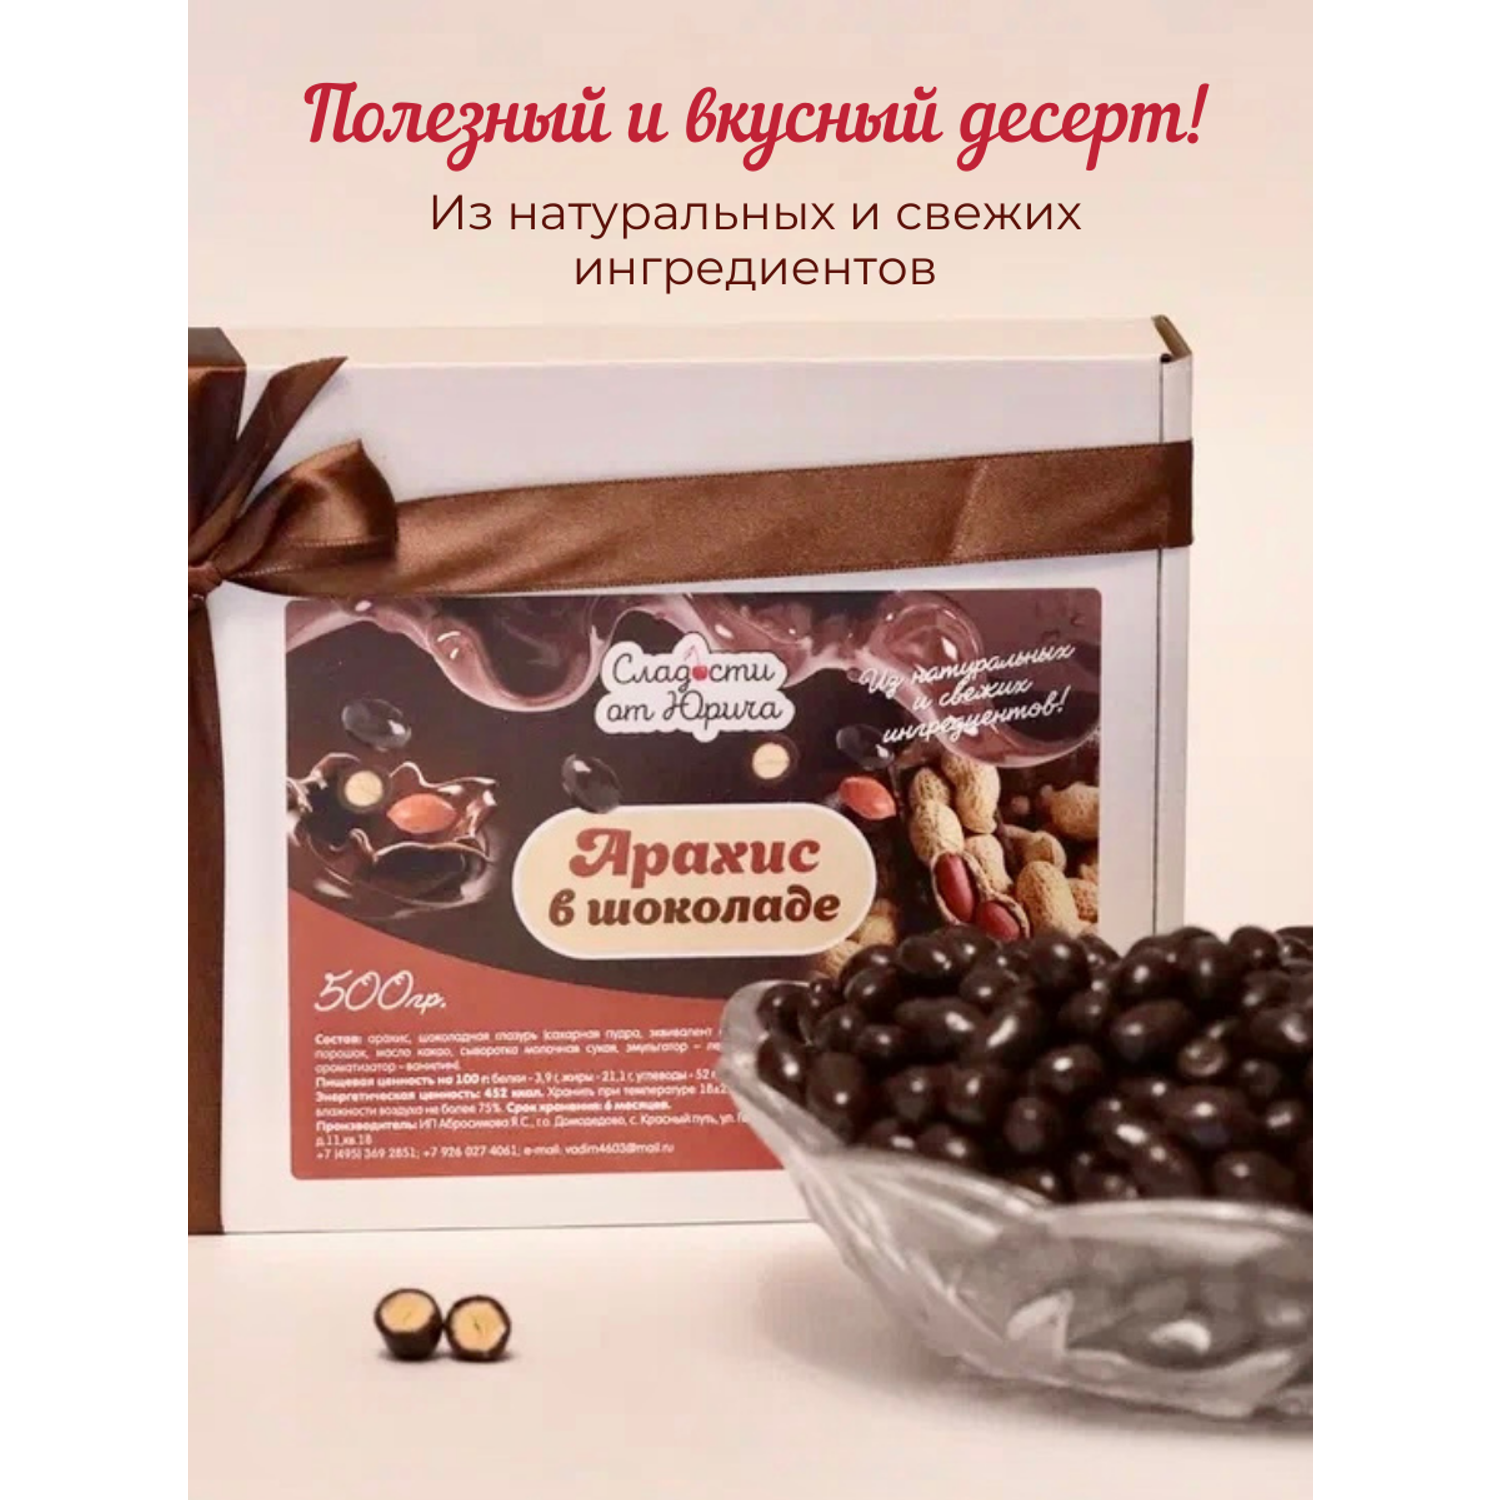 Арахис в шоколаде Сладости от Юрича 500гр - фото 2